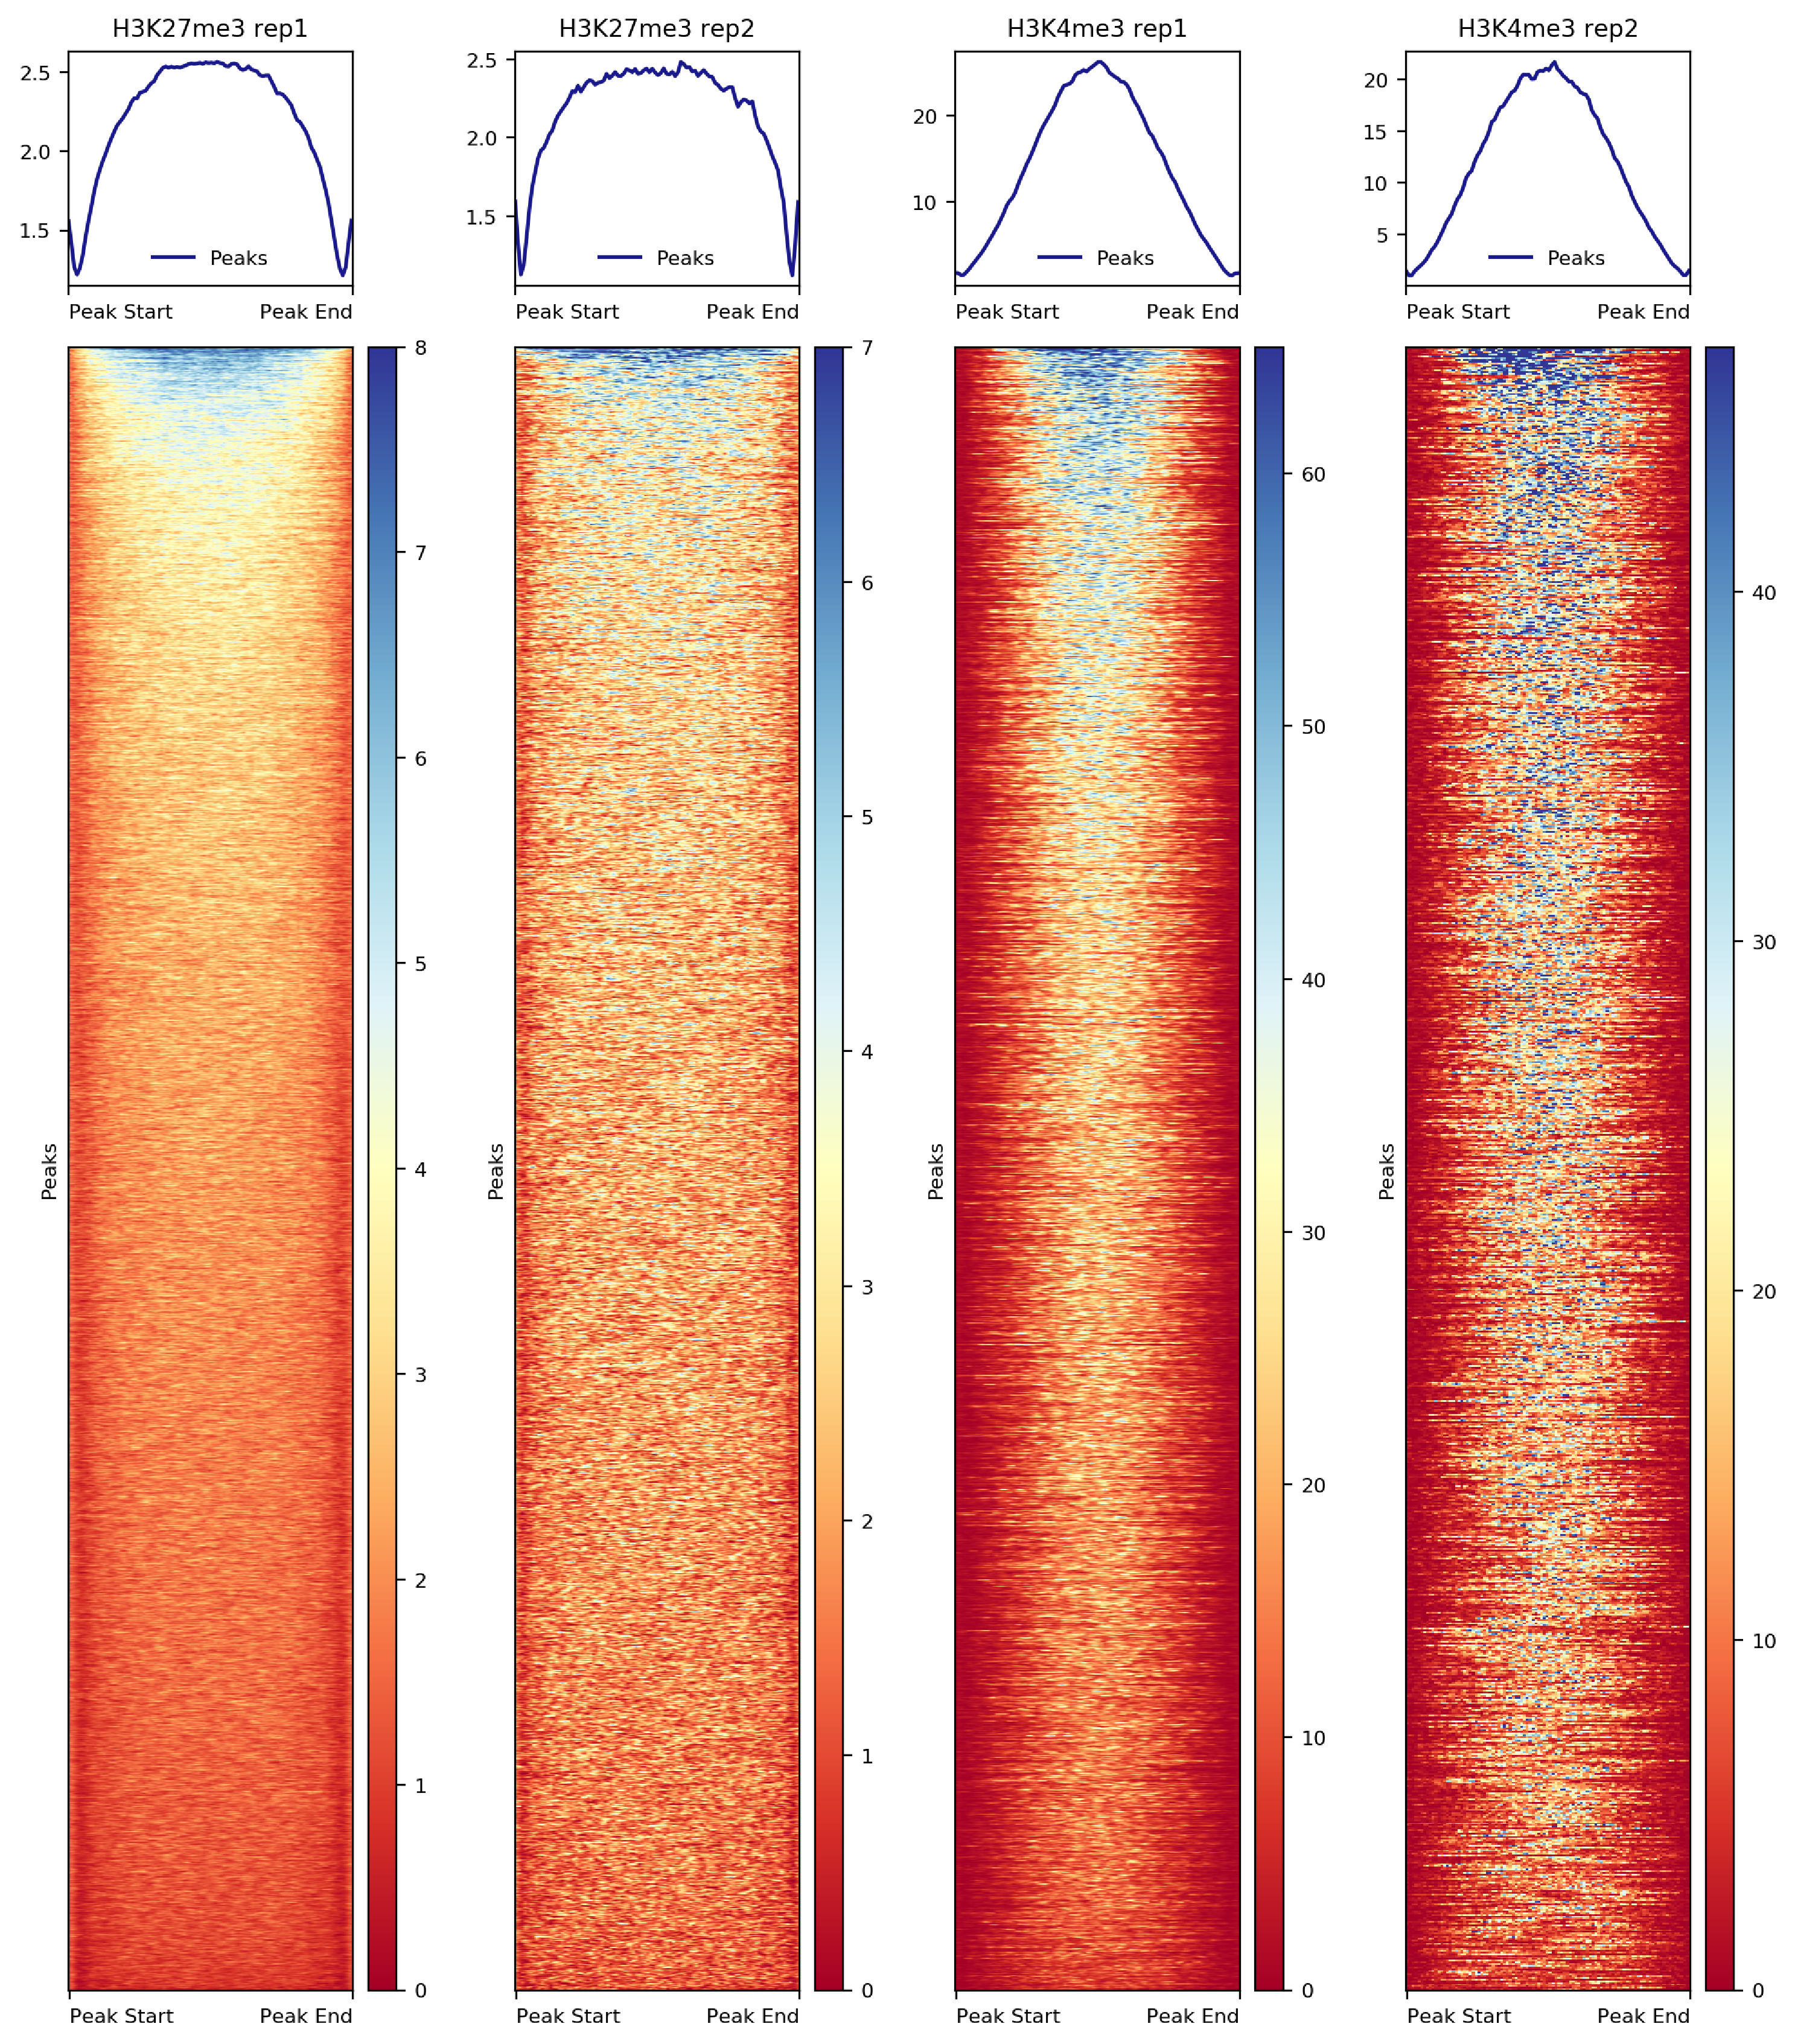 Figure 7. Heatmap of histone enrichment in peaks